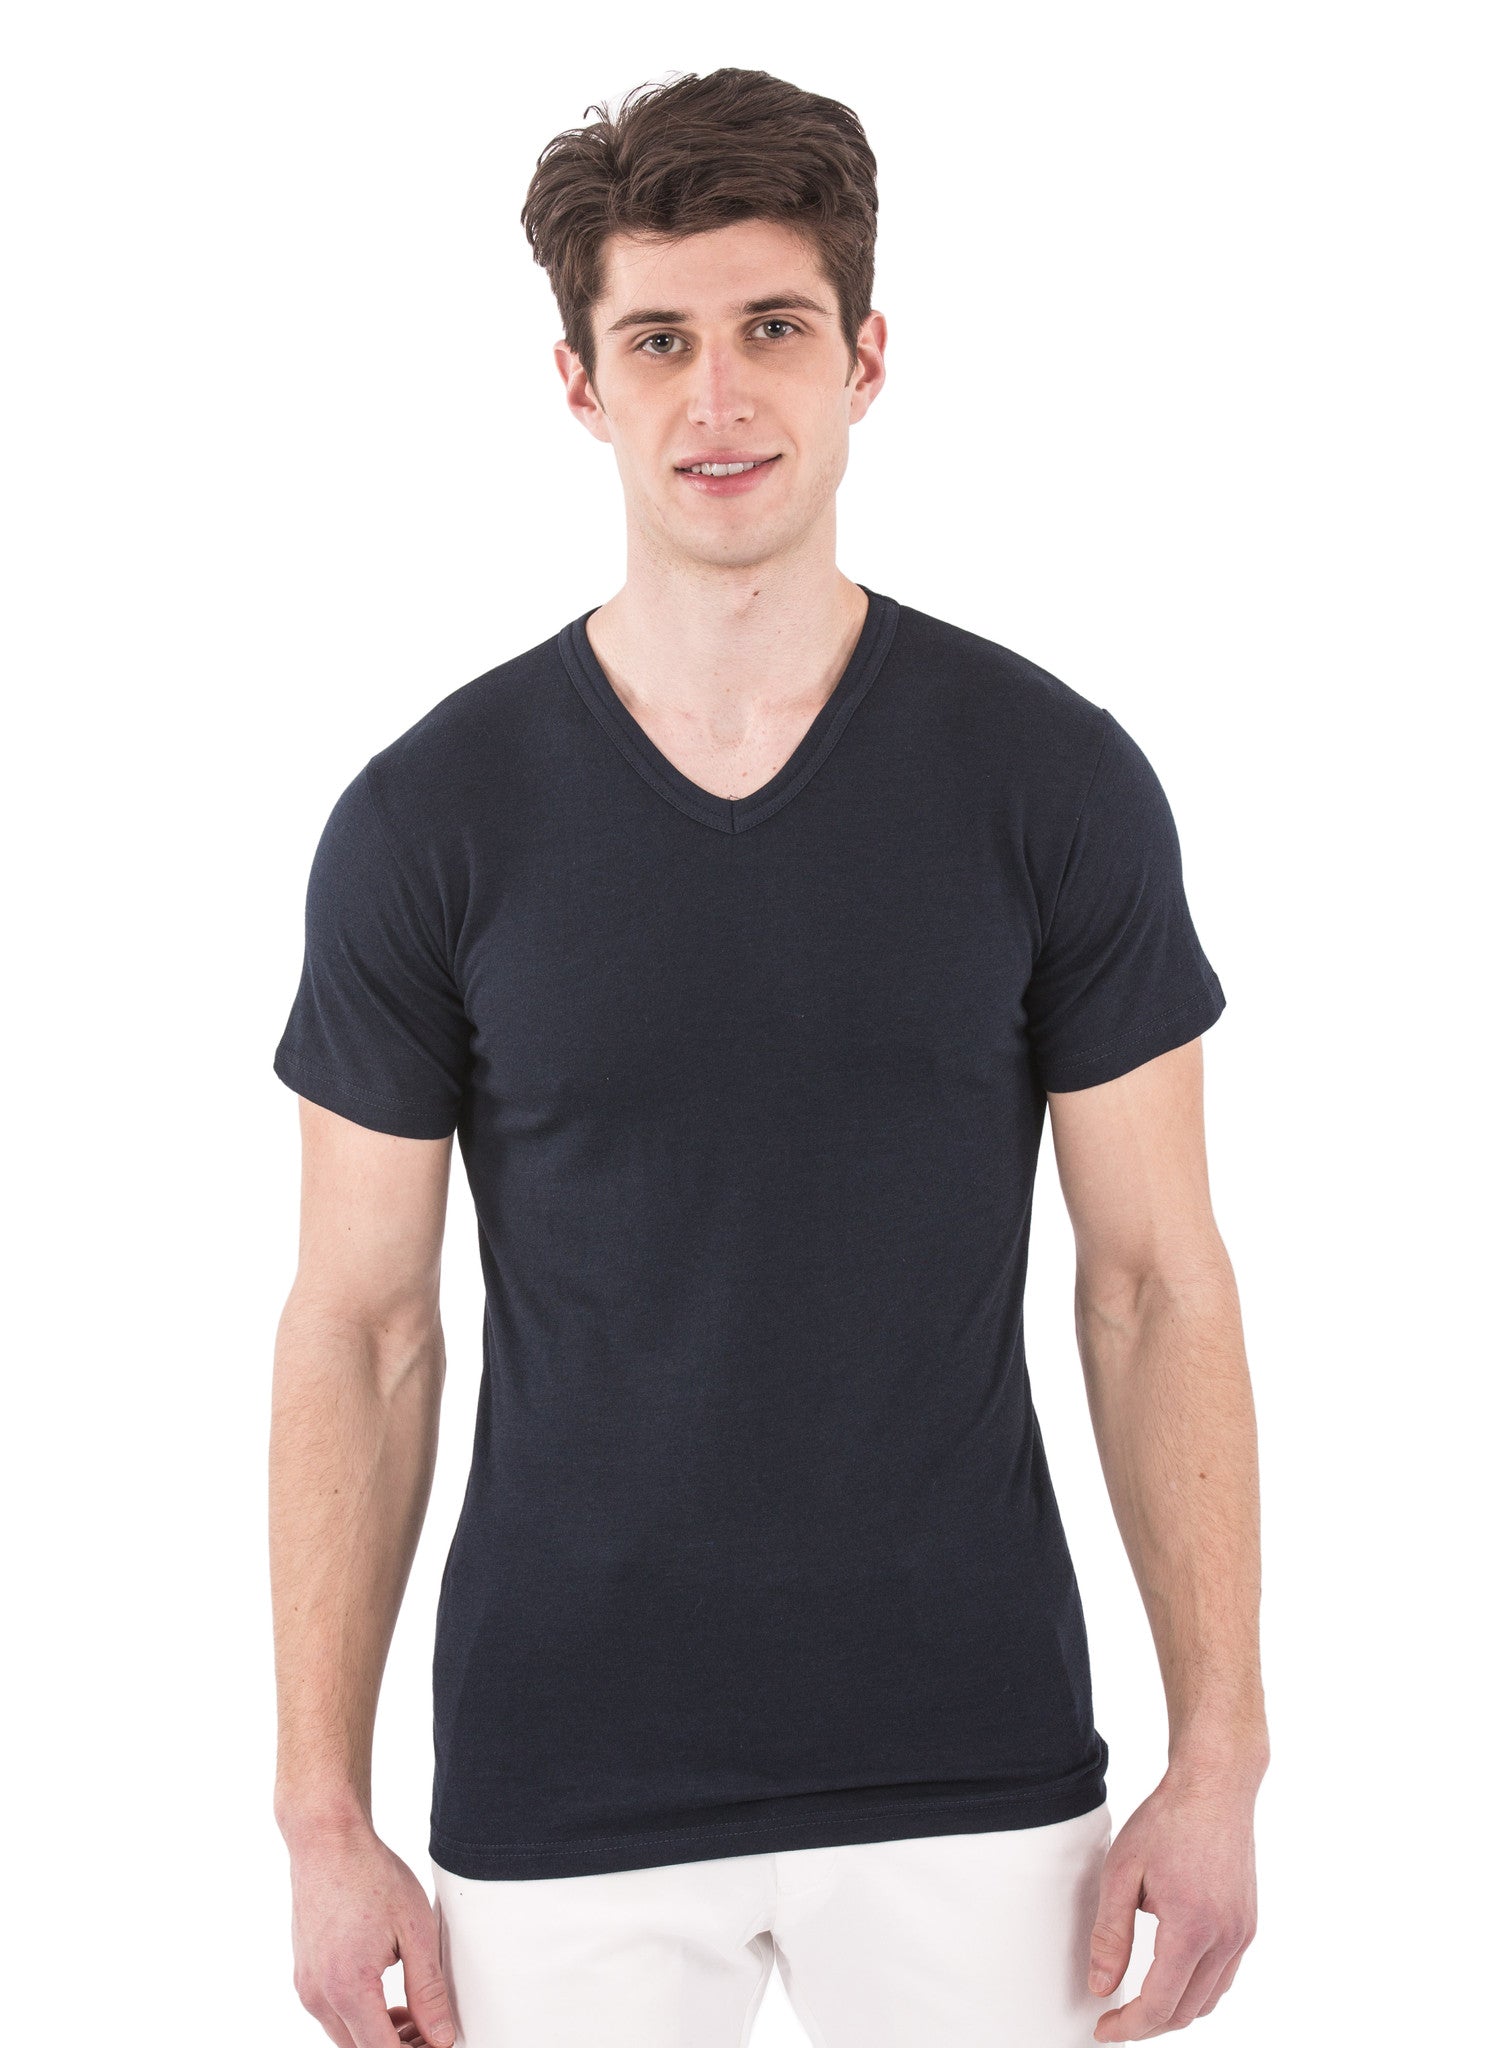 70% Bamboo Men's Short Sleeve V-Neck – The Bamboo Shirt | Natural and ...